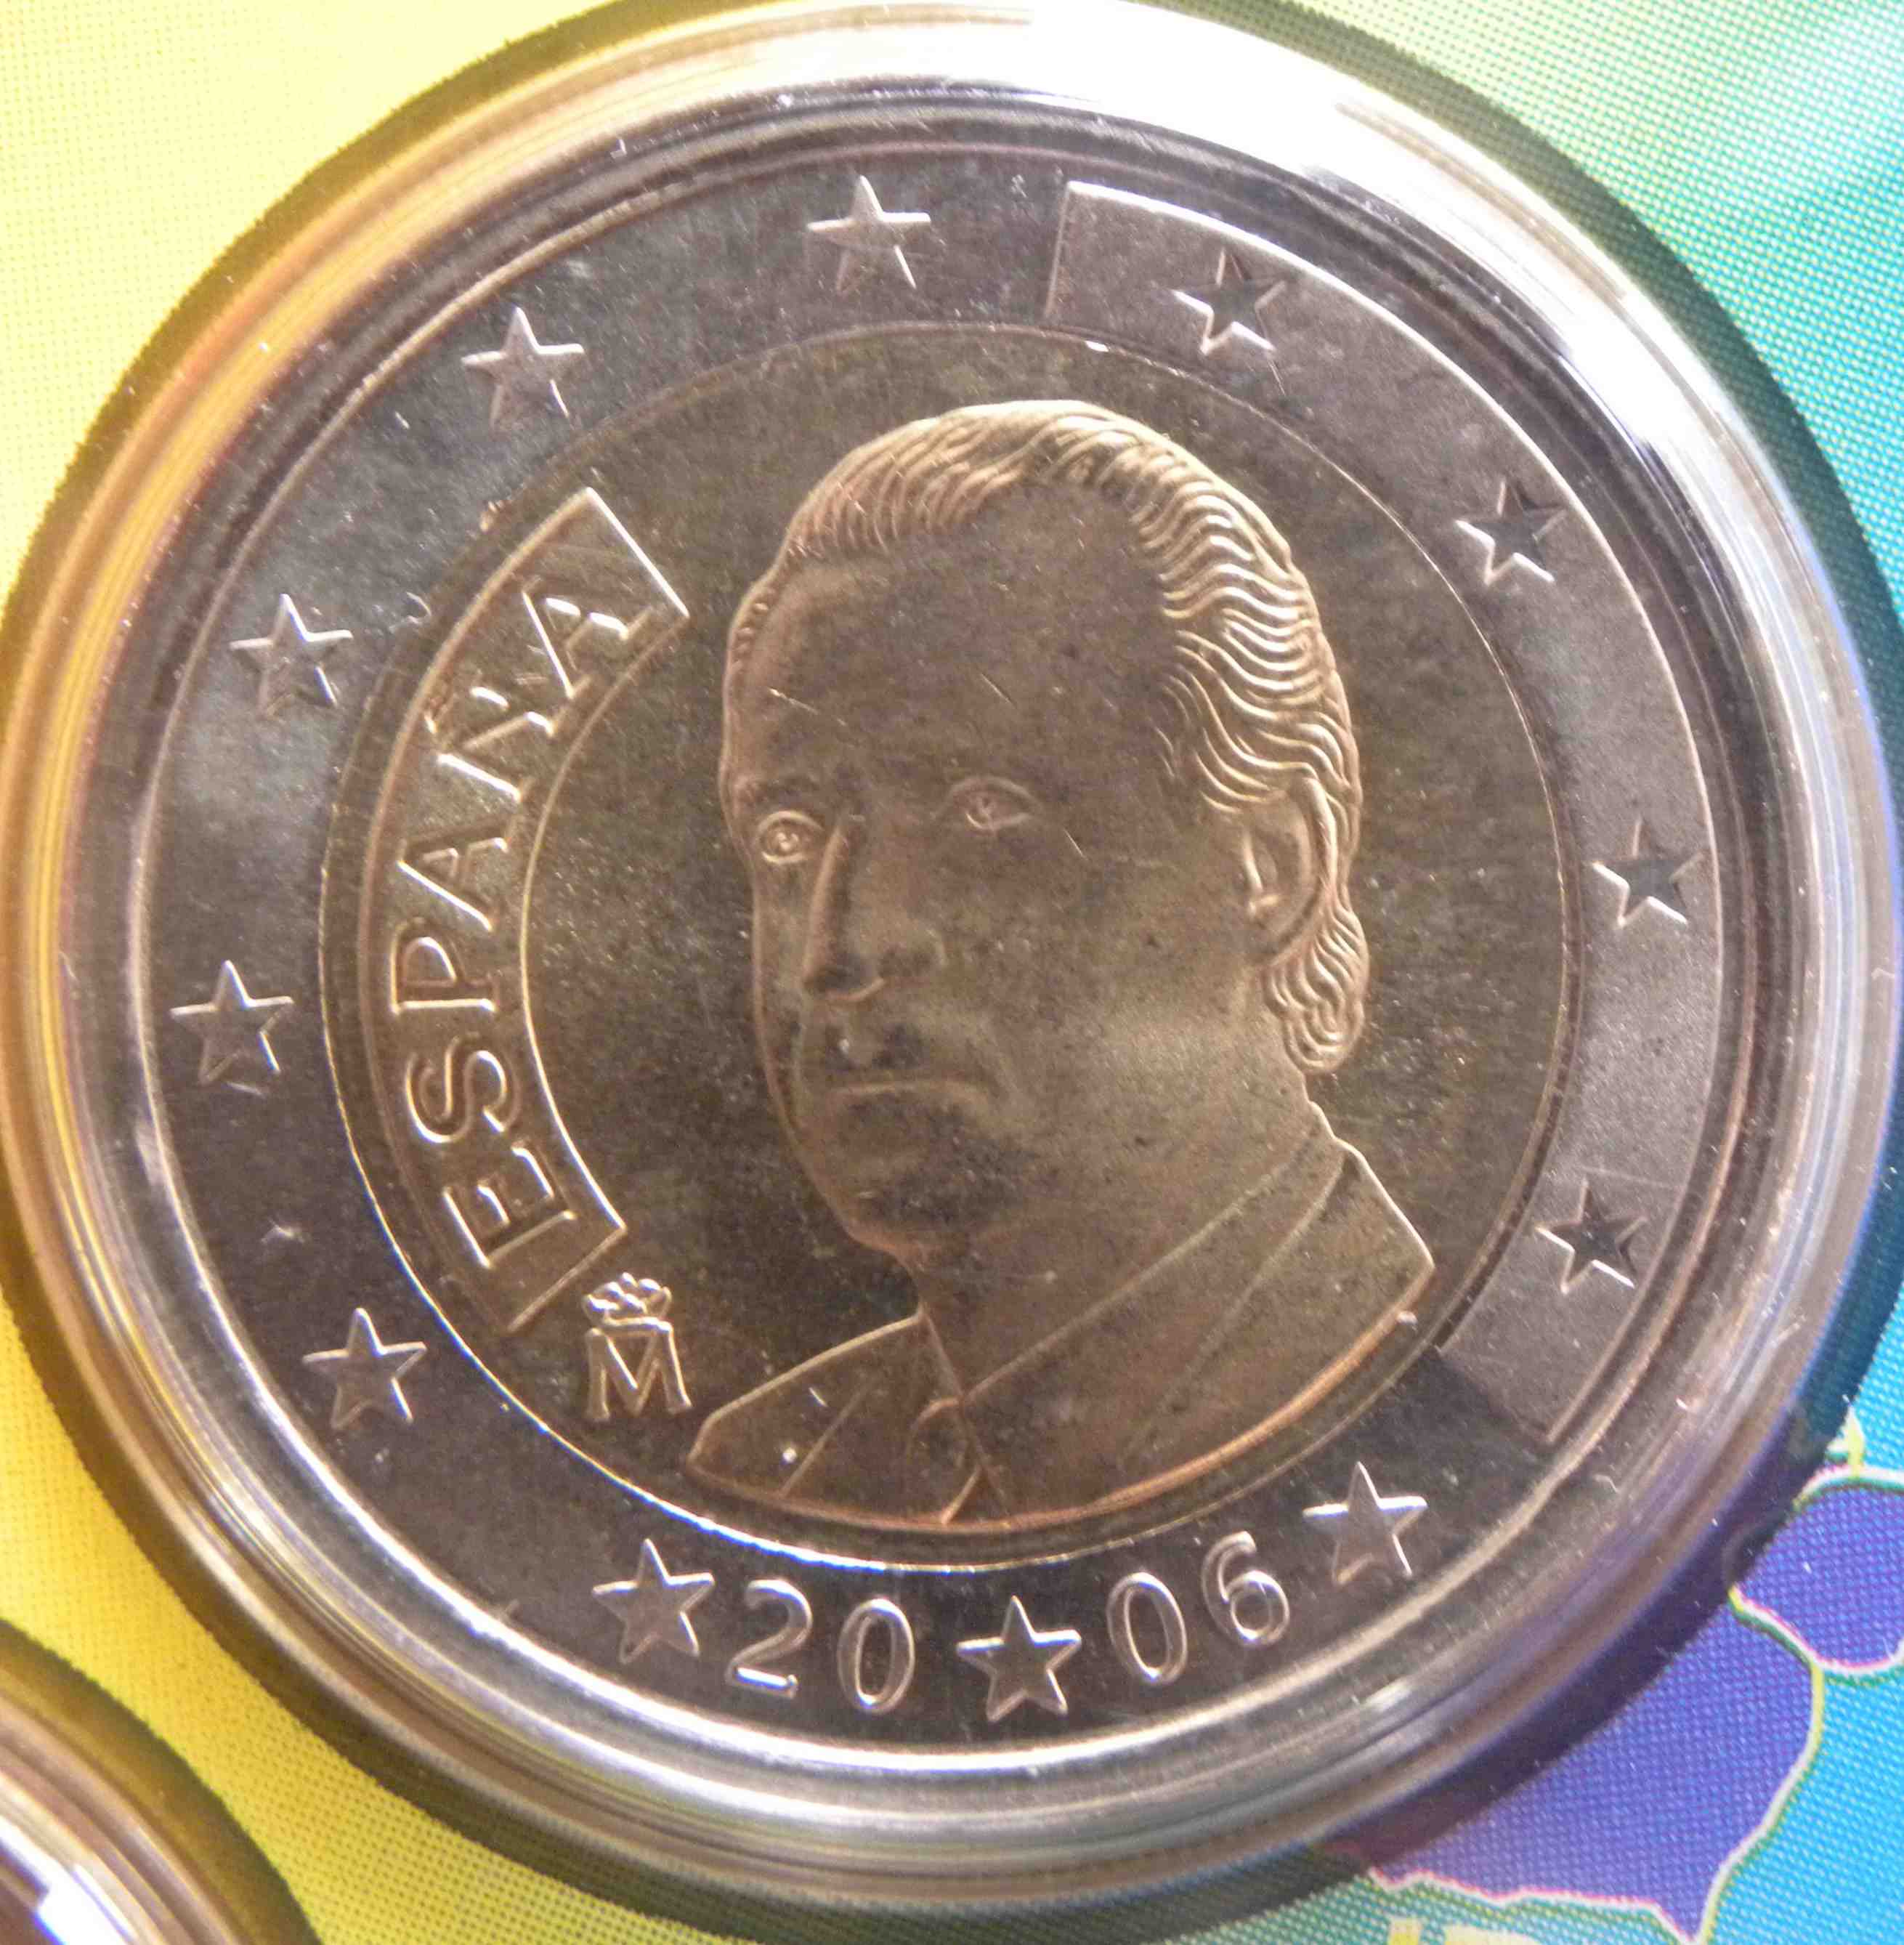 Spanien Euro Kursmünzen 2006 Wert Infos Und Bilder Bei Euro Muenzentv